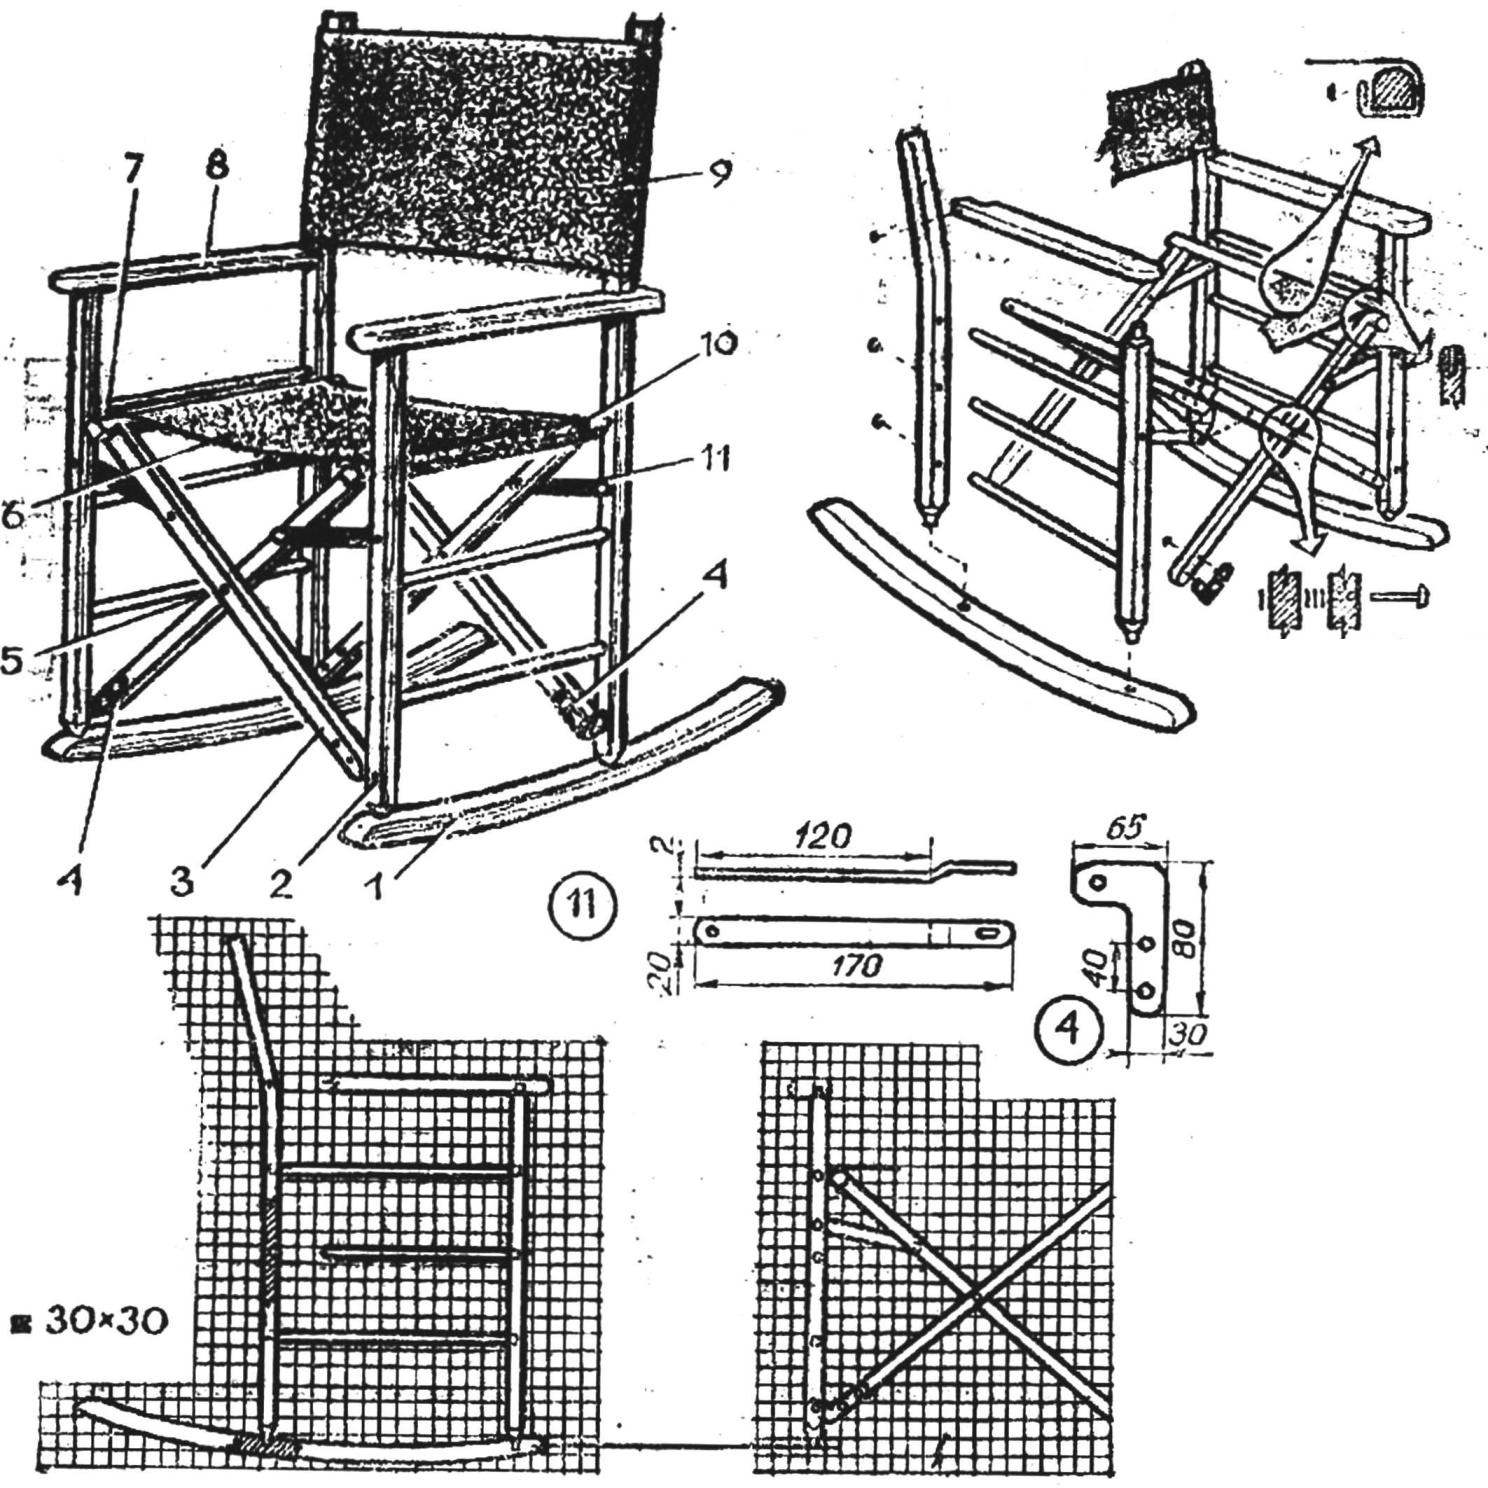 Кресло-качалка своими руками: мастер-класс включает изучение фото, выбор чертежа с размерами, подготовку лозы, чтобы сделать самому мебель в домашних условиях